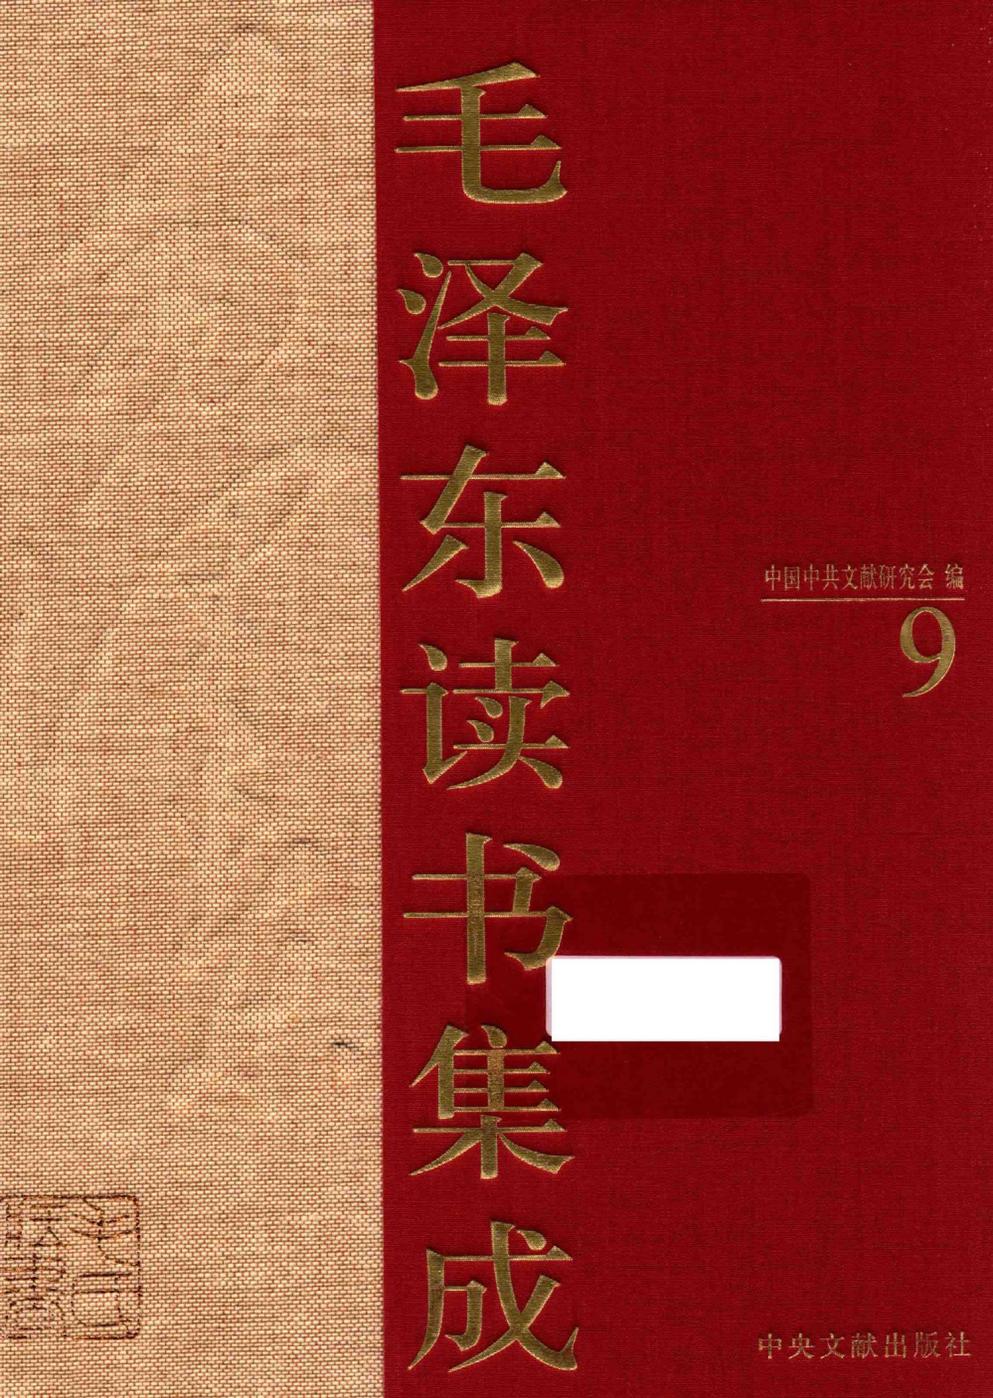 毛泽东读书集成（第9卷）-1